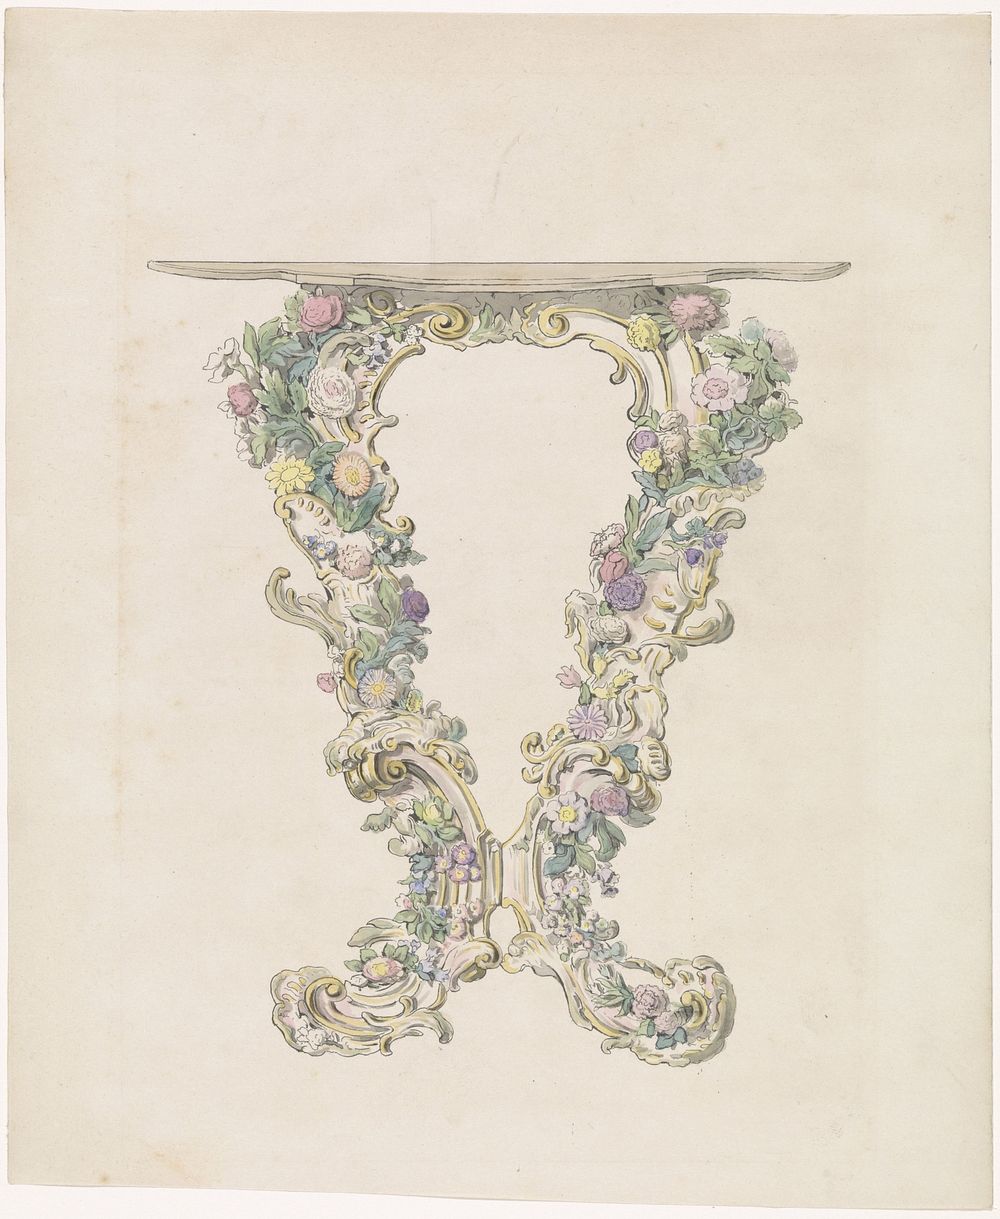 Ontwerp voor een consoletafel van porselein (c. 1850) by anonymous